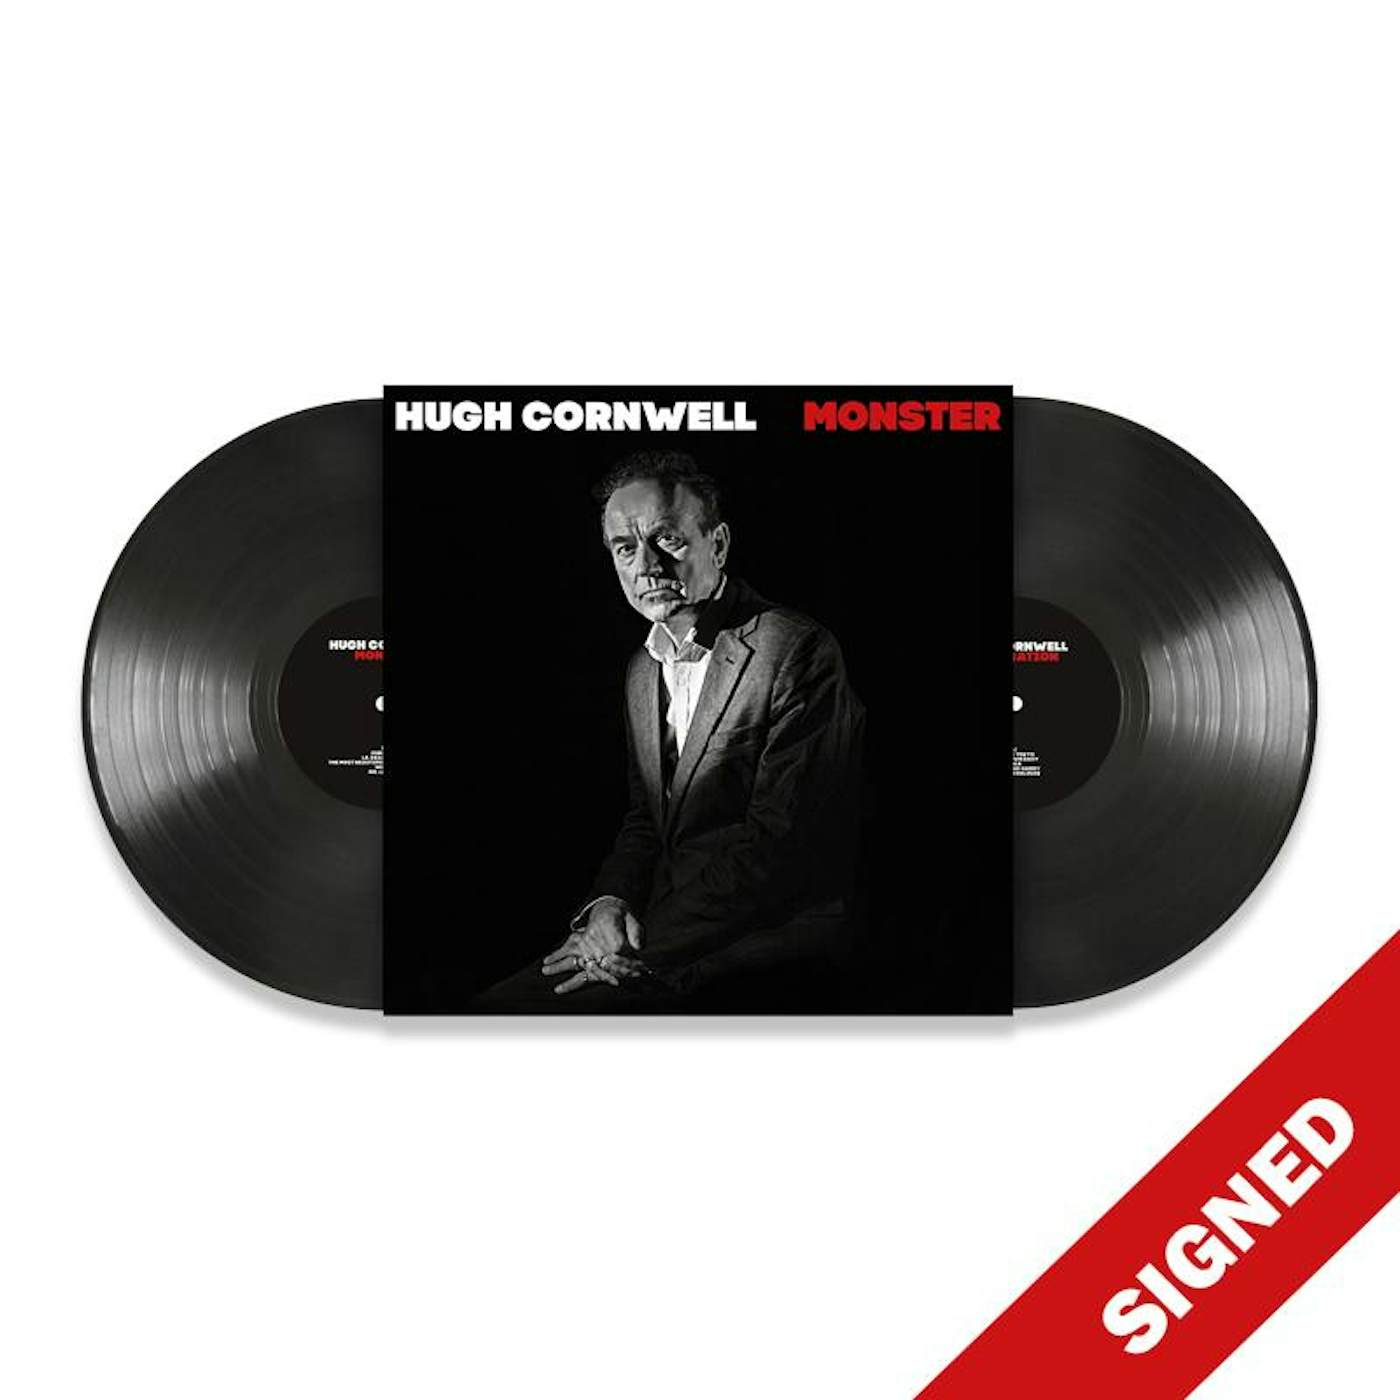 Hugh Cornwell MONSTER - SIGNED 2LP (Vinyl)